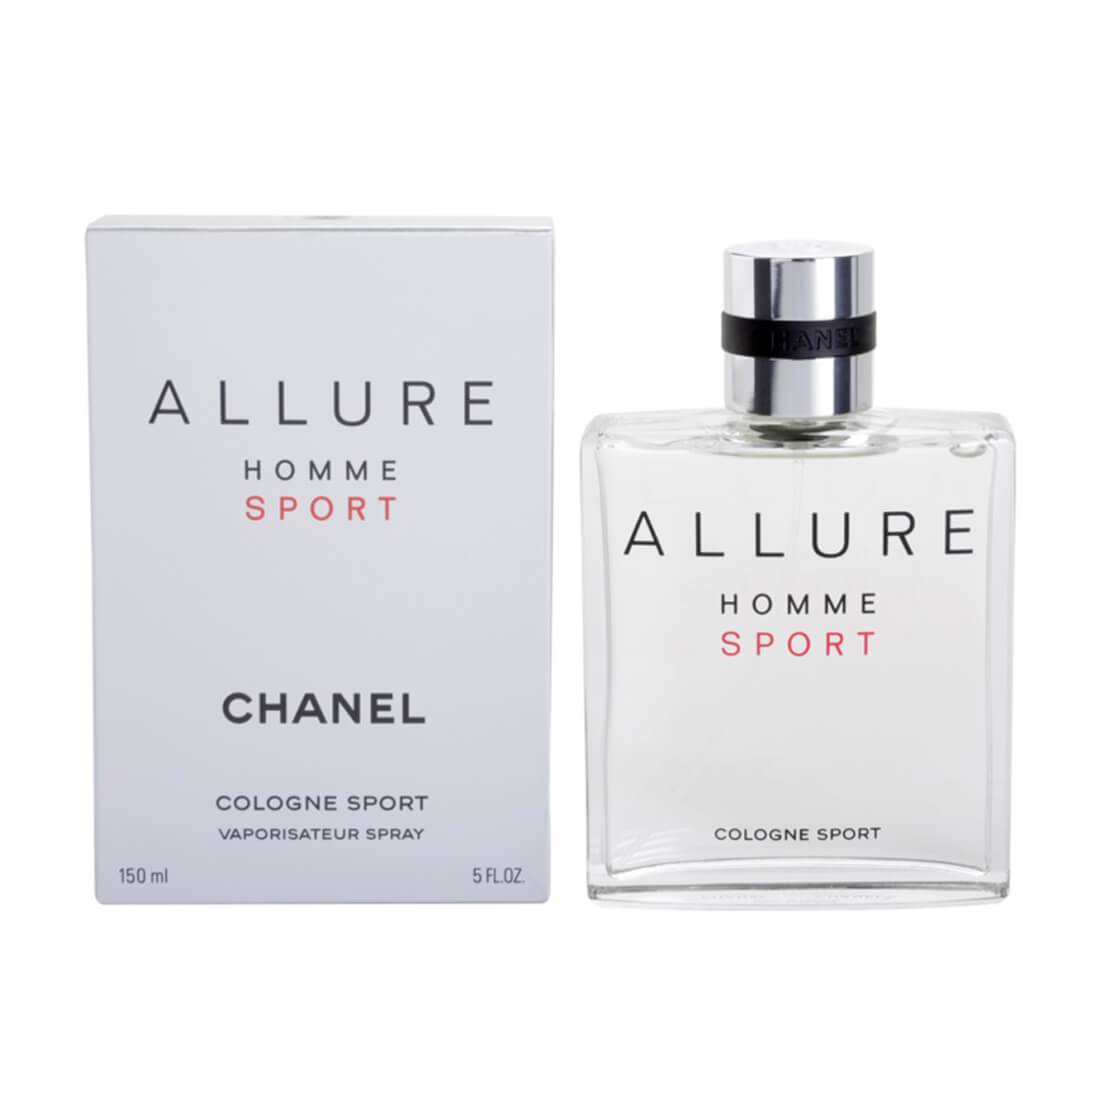 Chanel Allure Homme Sport Cologne Eau De Cologne Perfume For Men